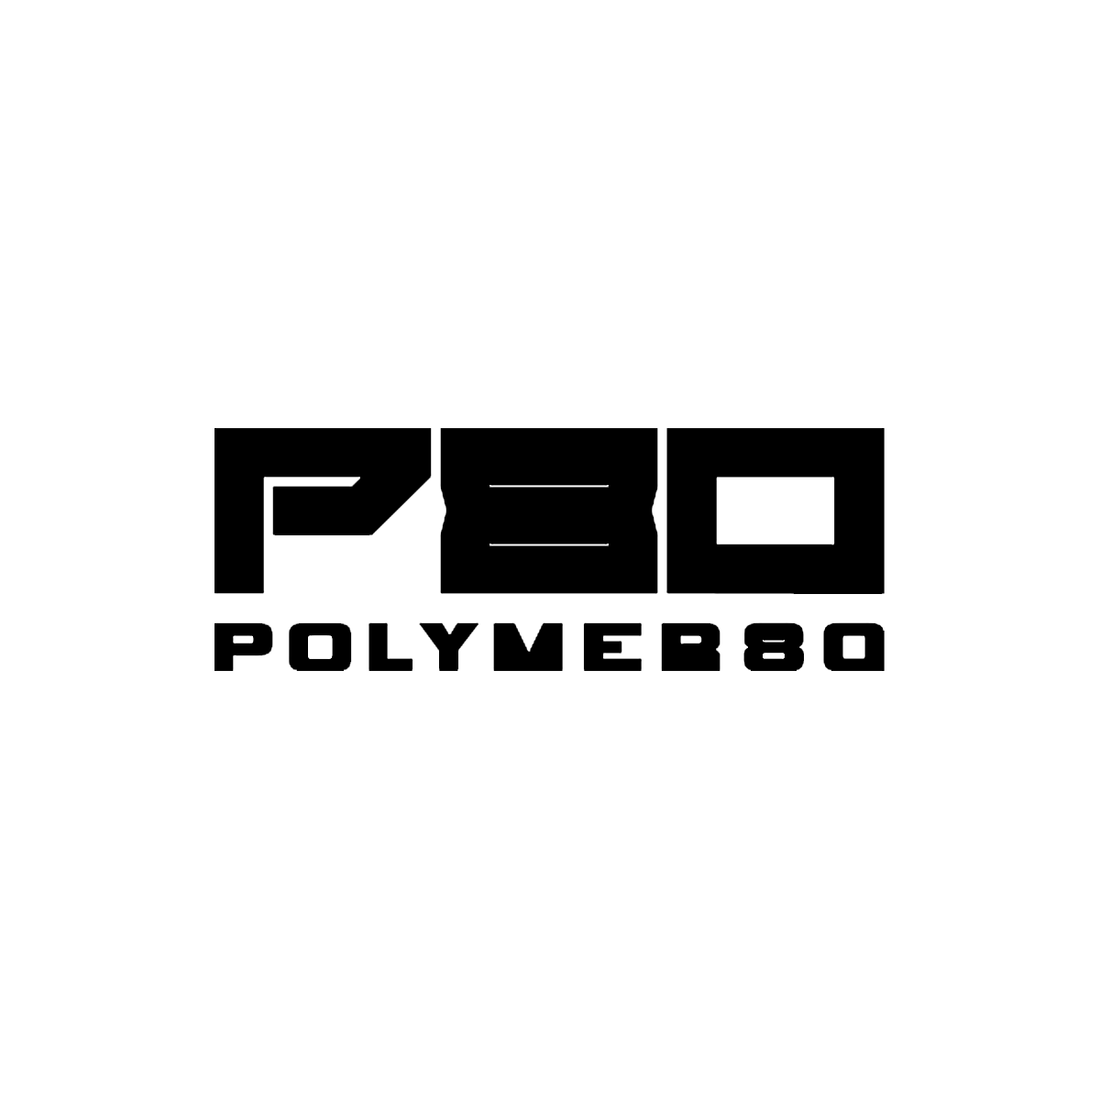 Polymer 80 IWB/OWB 2-n-1 Paddle Holsters